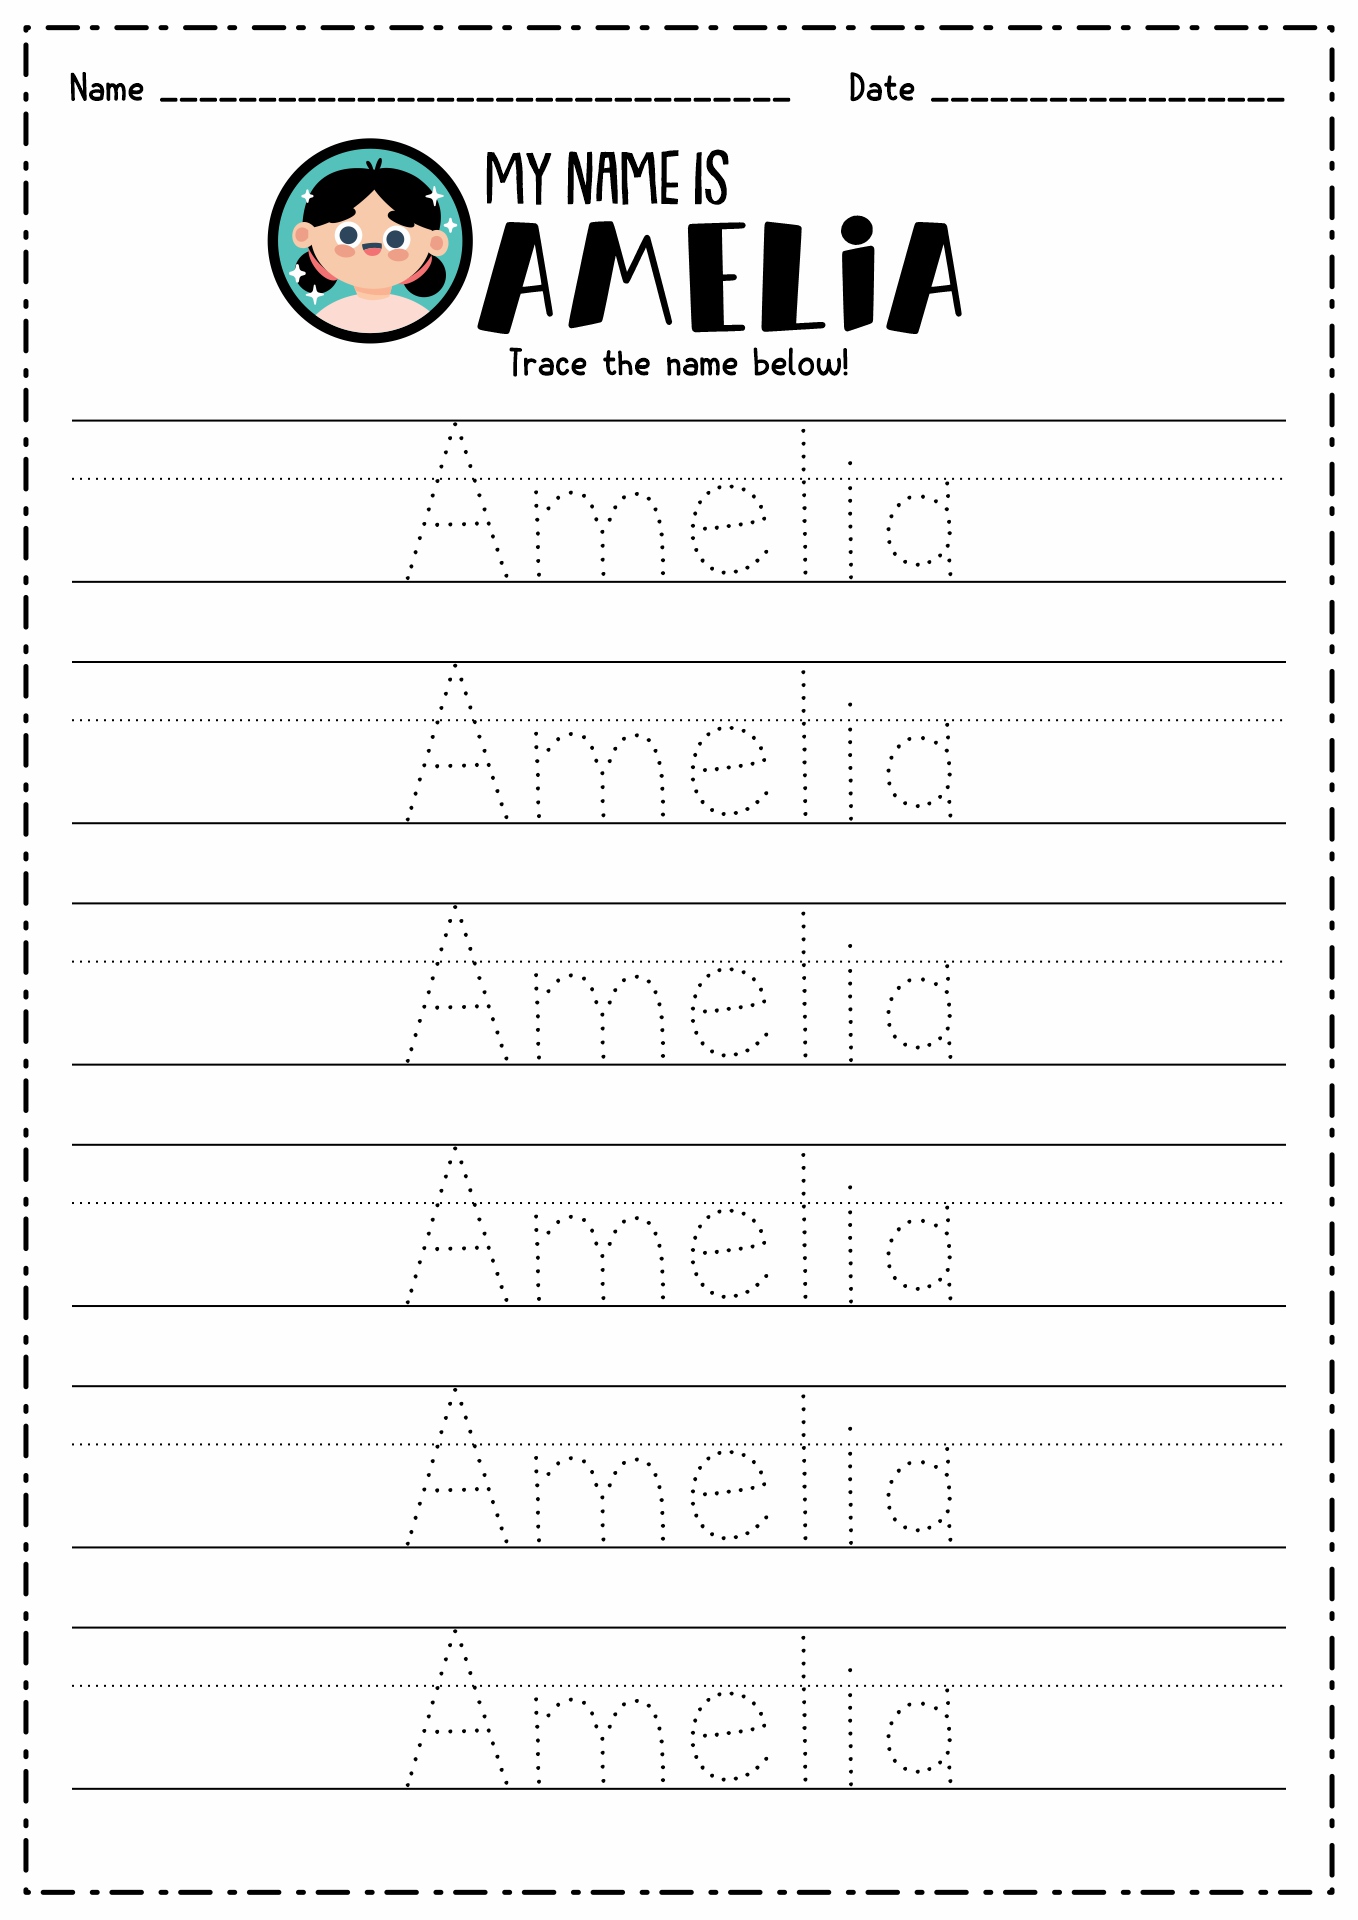 Free Printable Preschool Name Worksheets Image